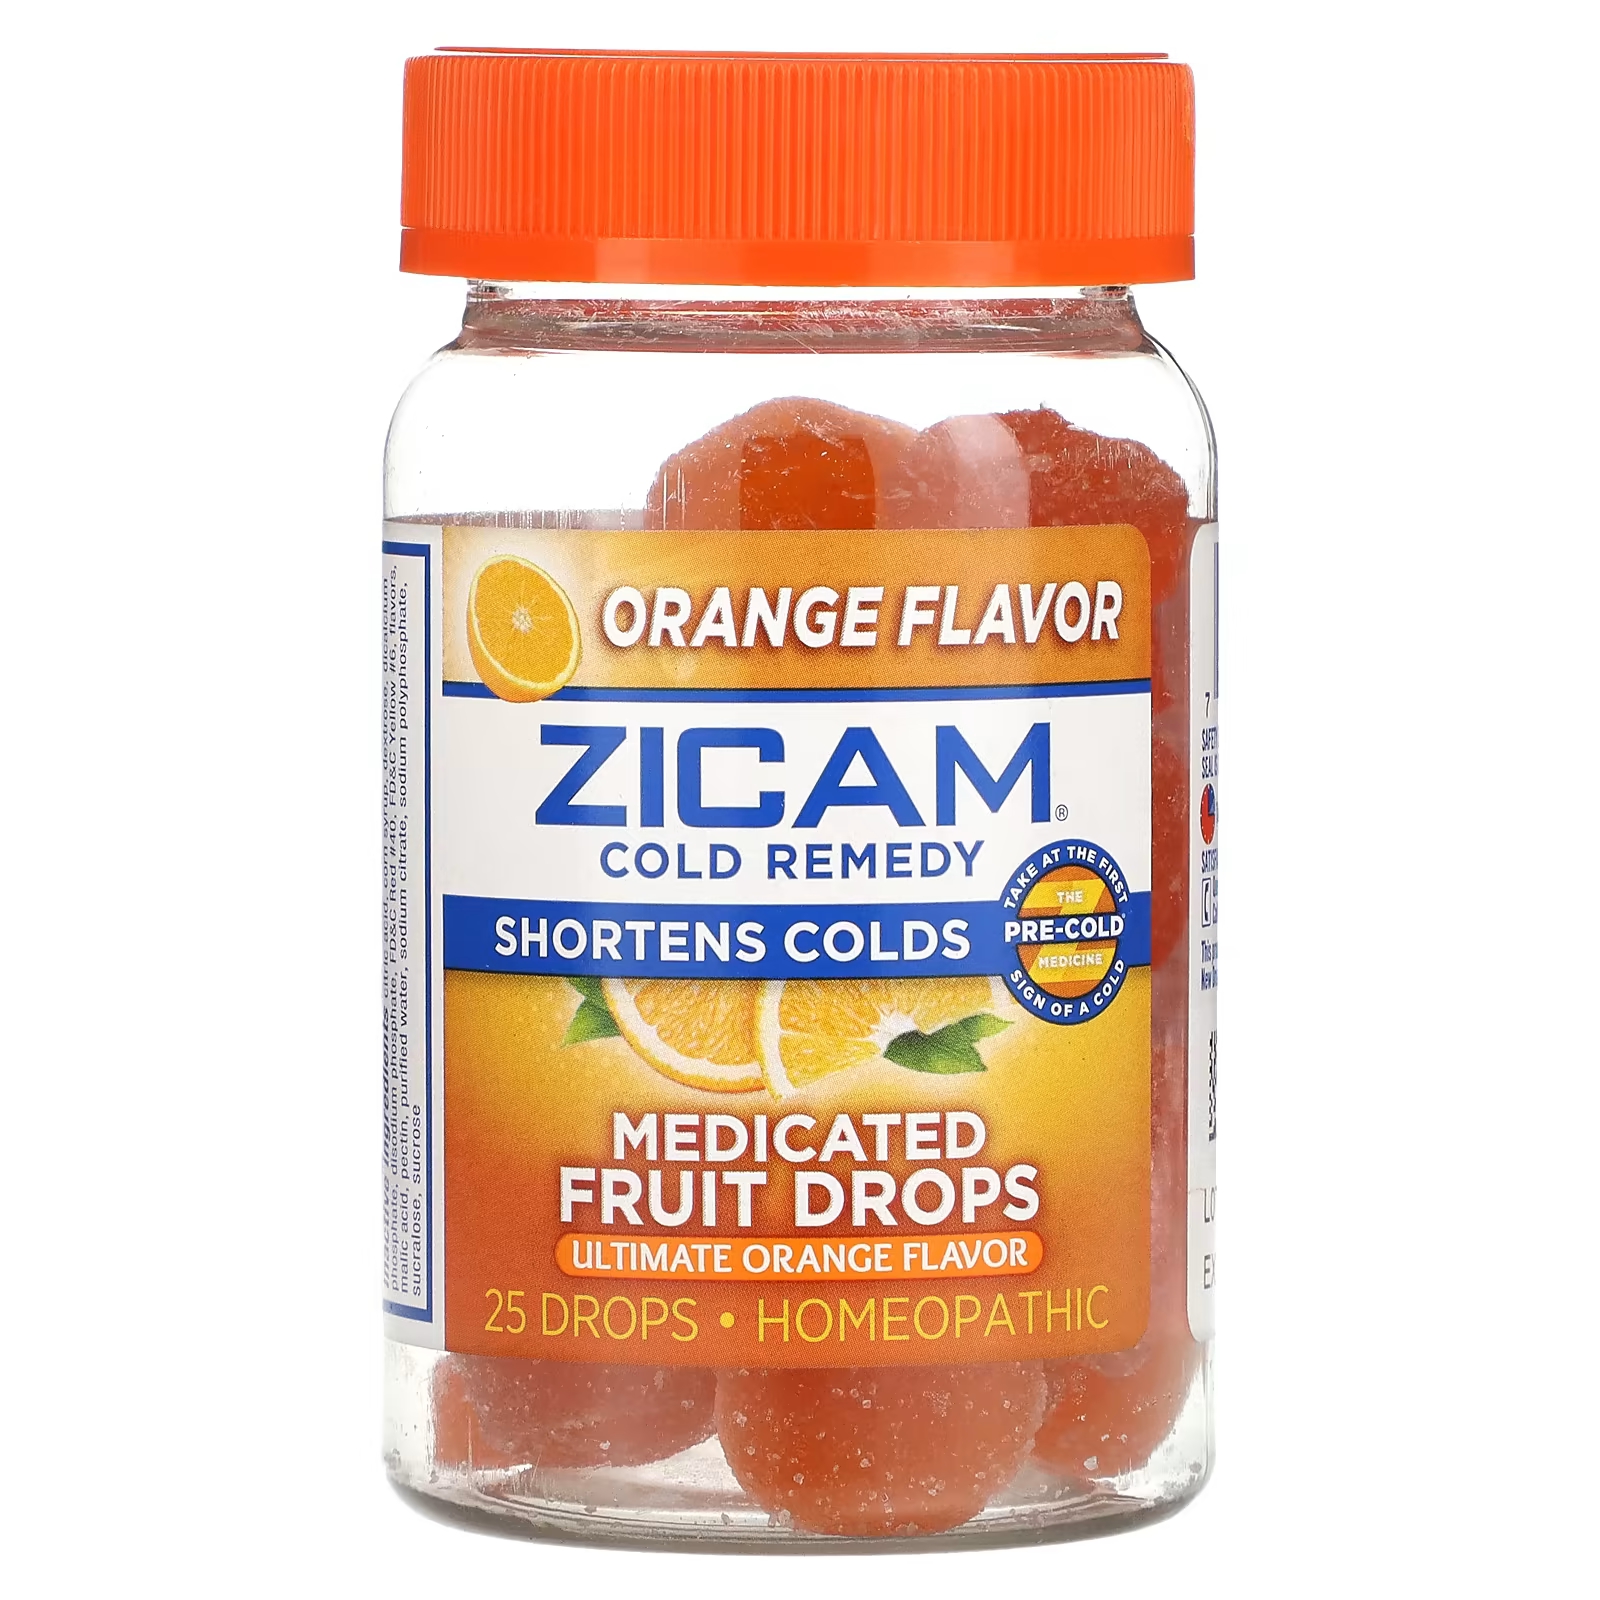 Средство от простуды Zicam, лечебные фруктовые капли zicam cold remedy лечебные фруктовые капли превосходный апельсин 25 капель